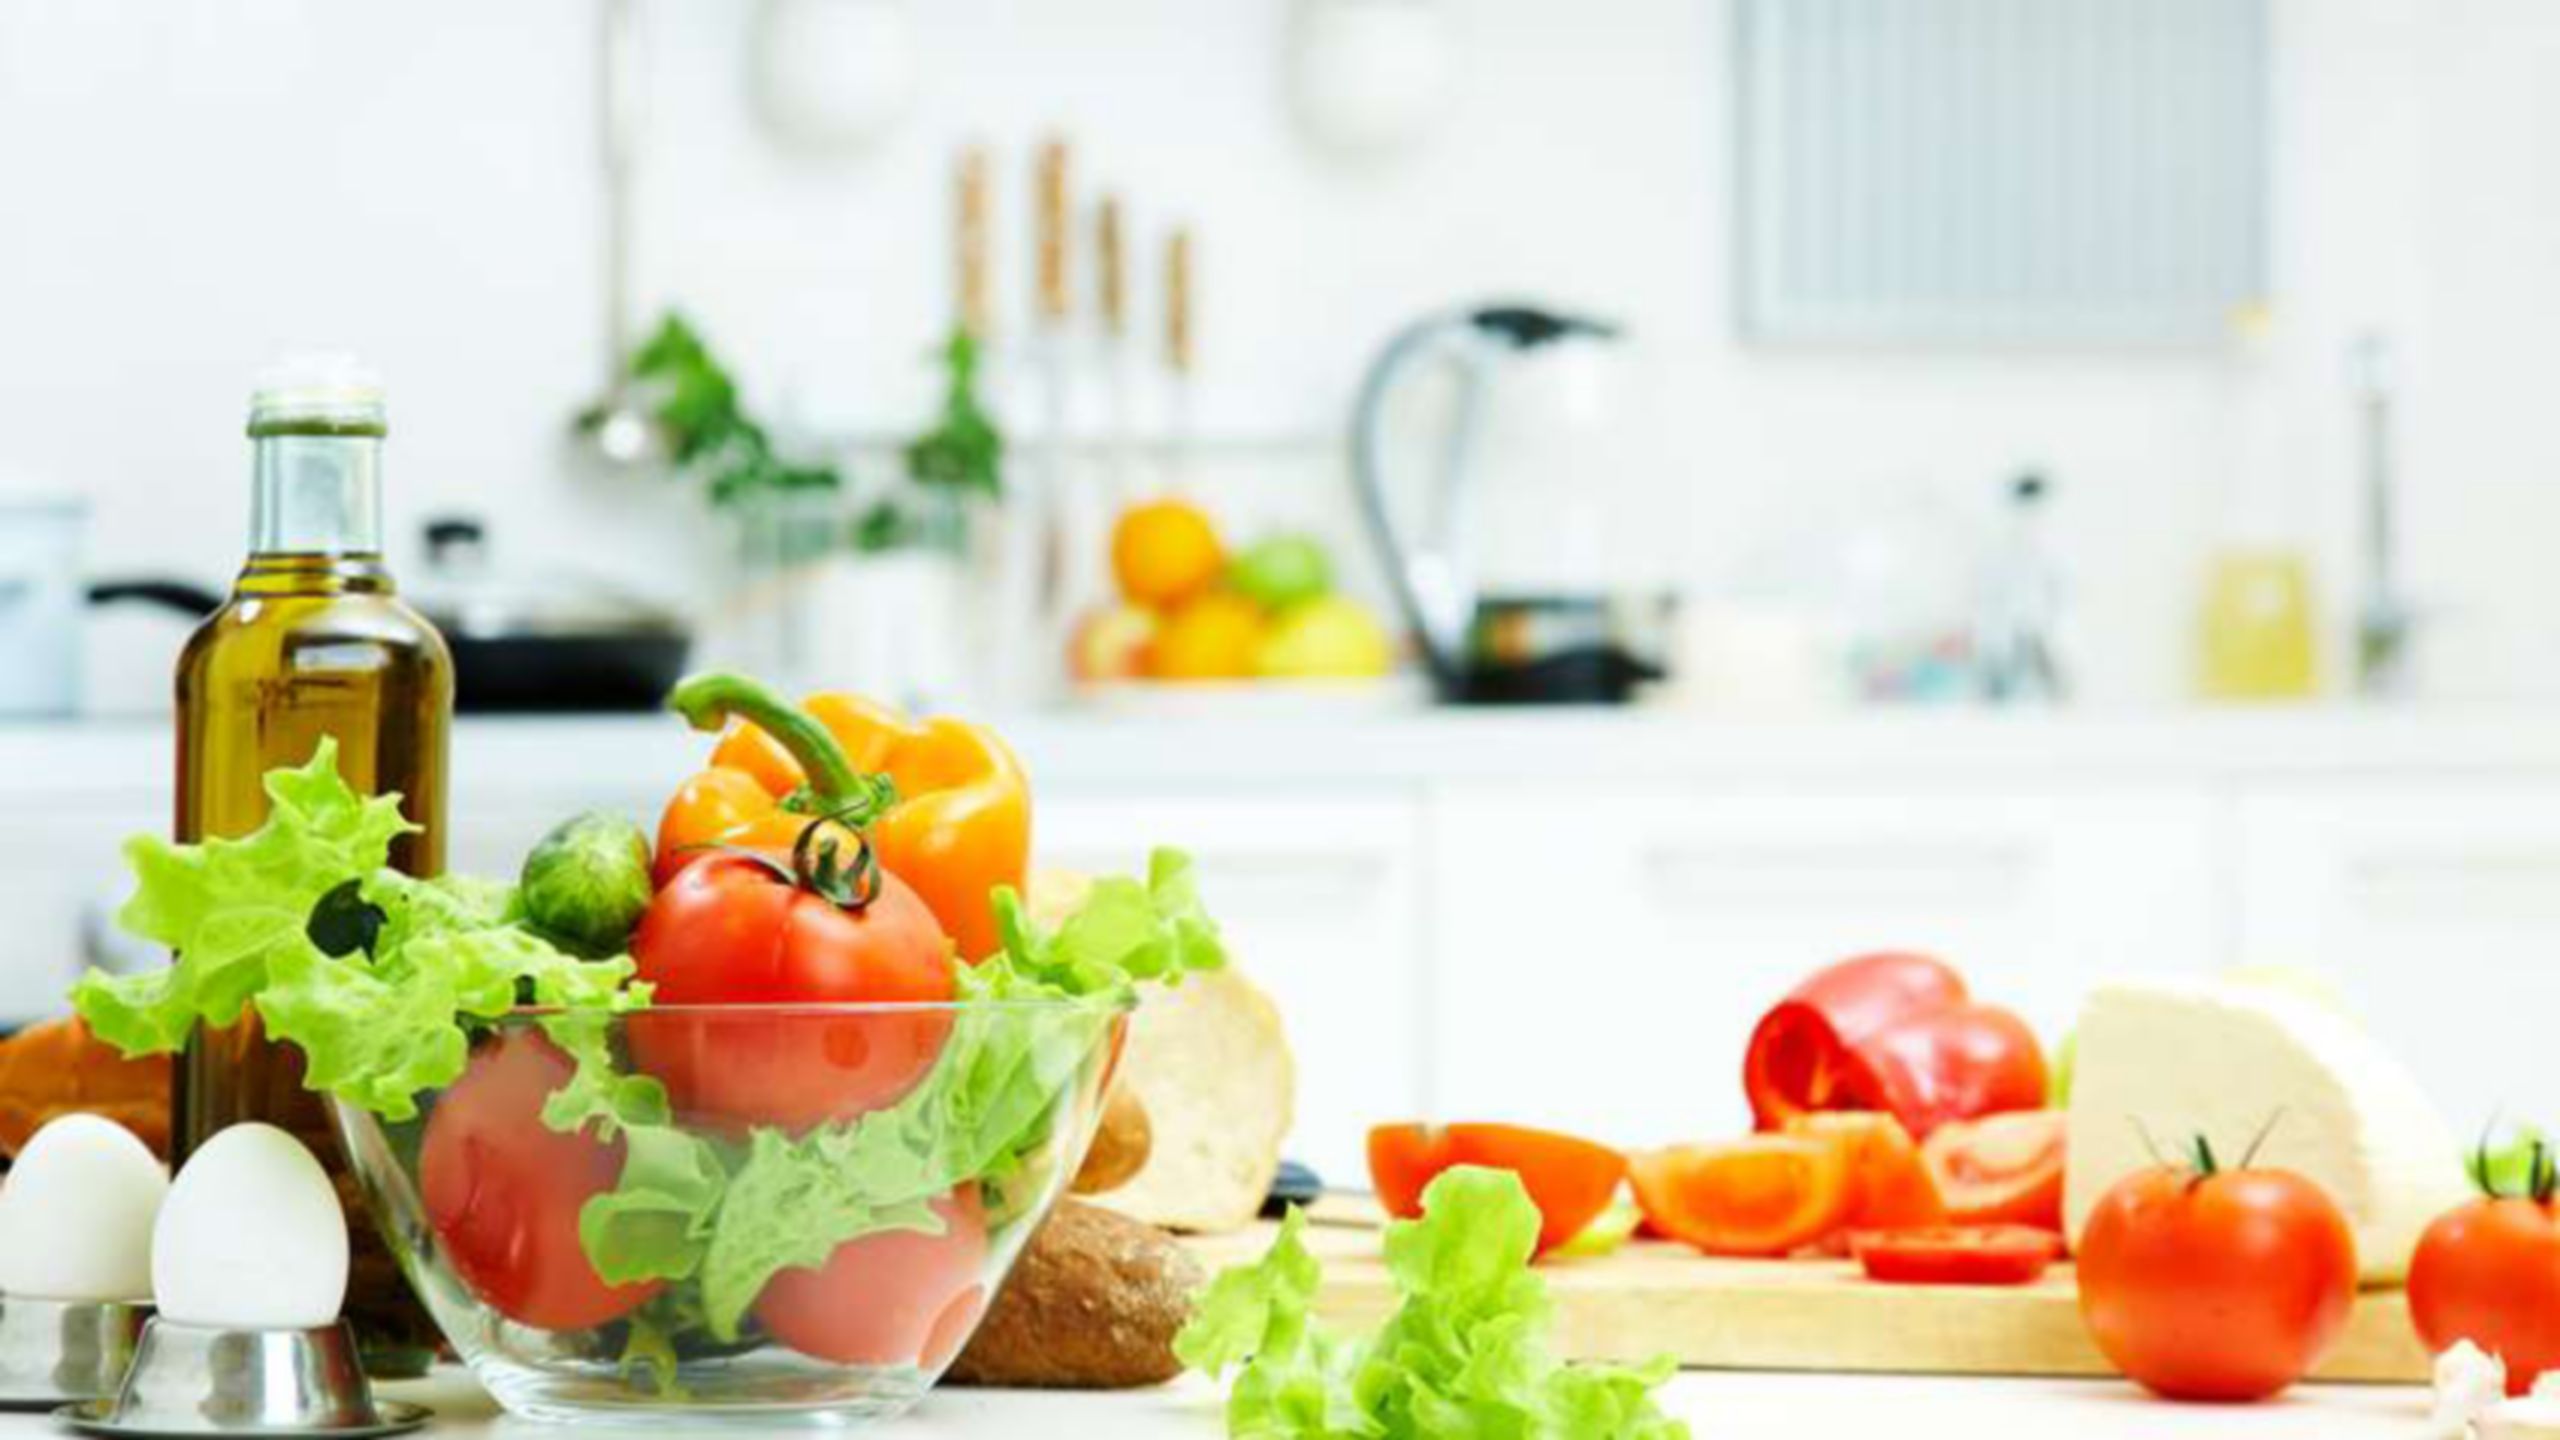 Ingrédients pour une salade, notamment de la tomate, de la laitue et des œufs posés sur un comptoir de cuisine